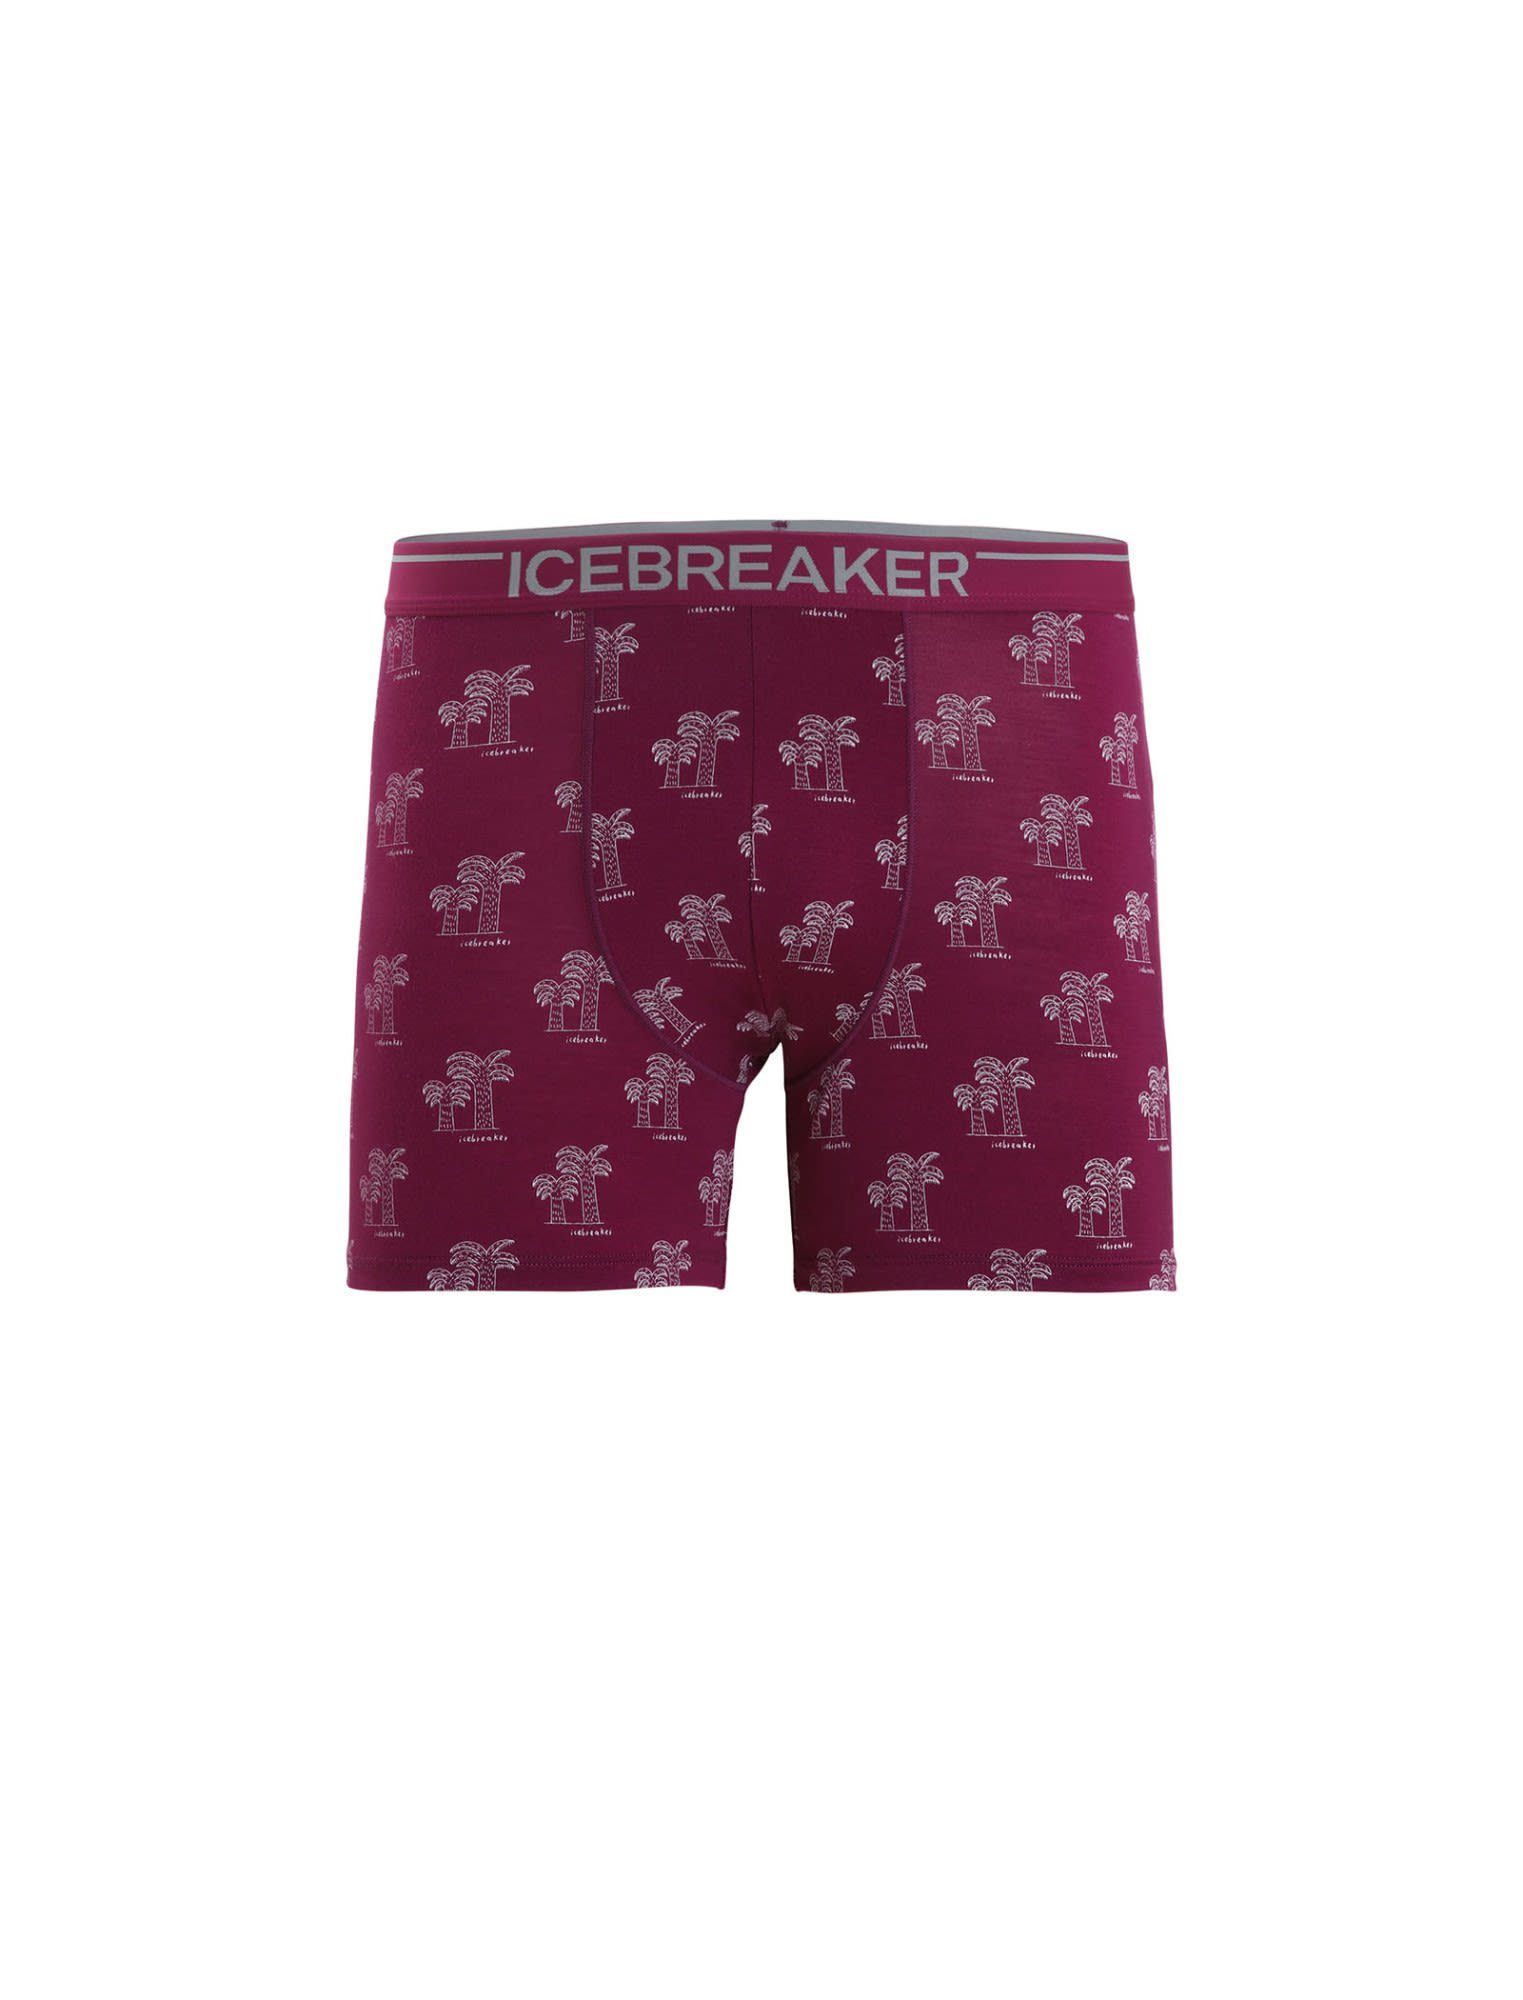 Icebreaker Boxers M AOP Go Berry - Lange Icebreaker Kurze Anatomica Herren Unterhose